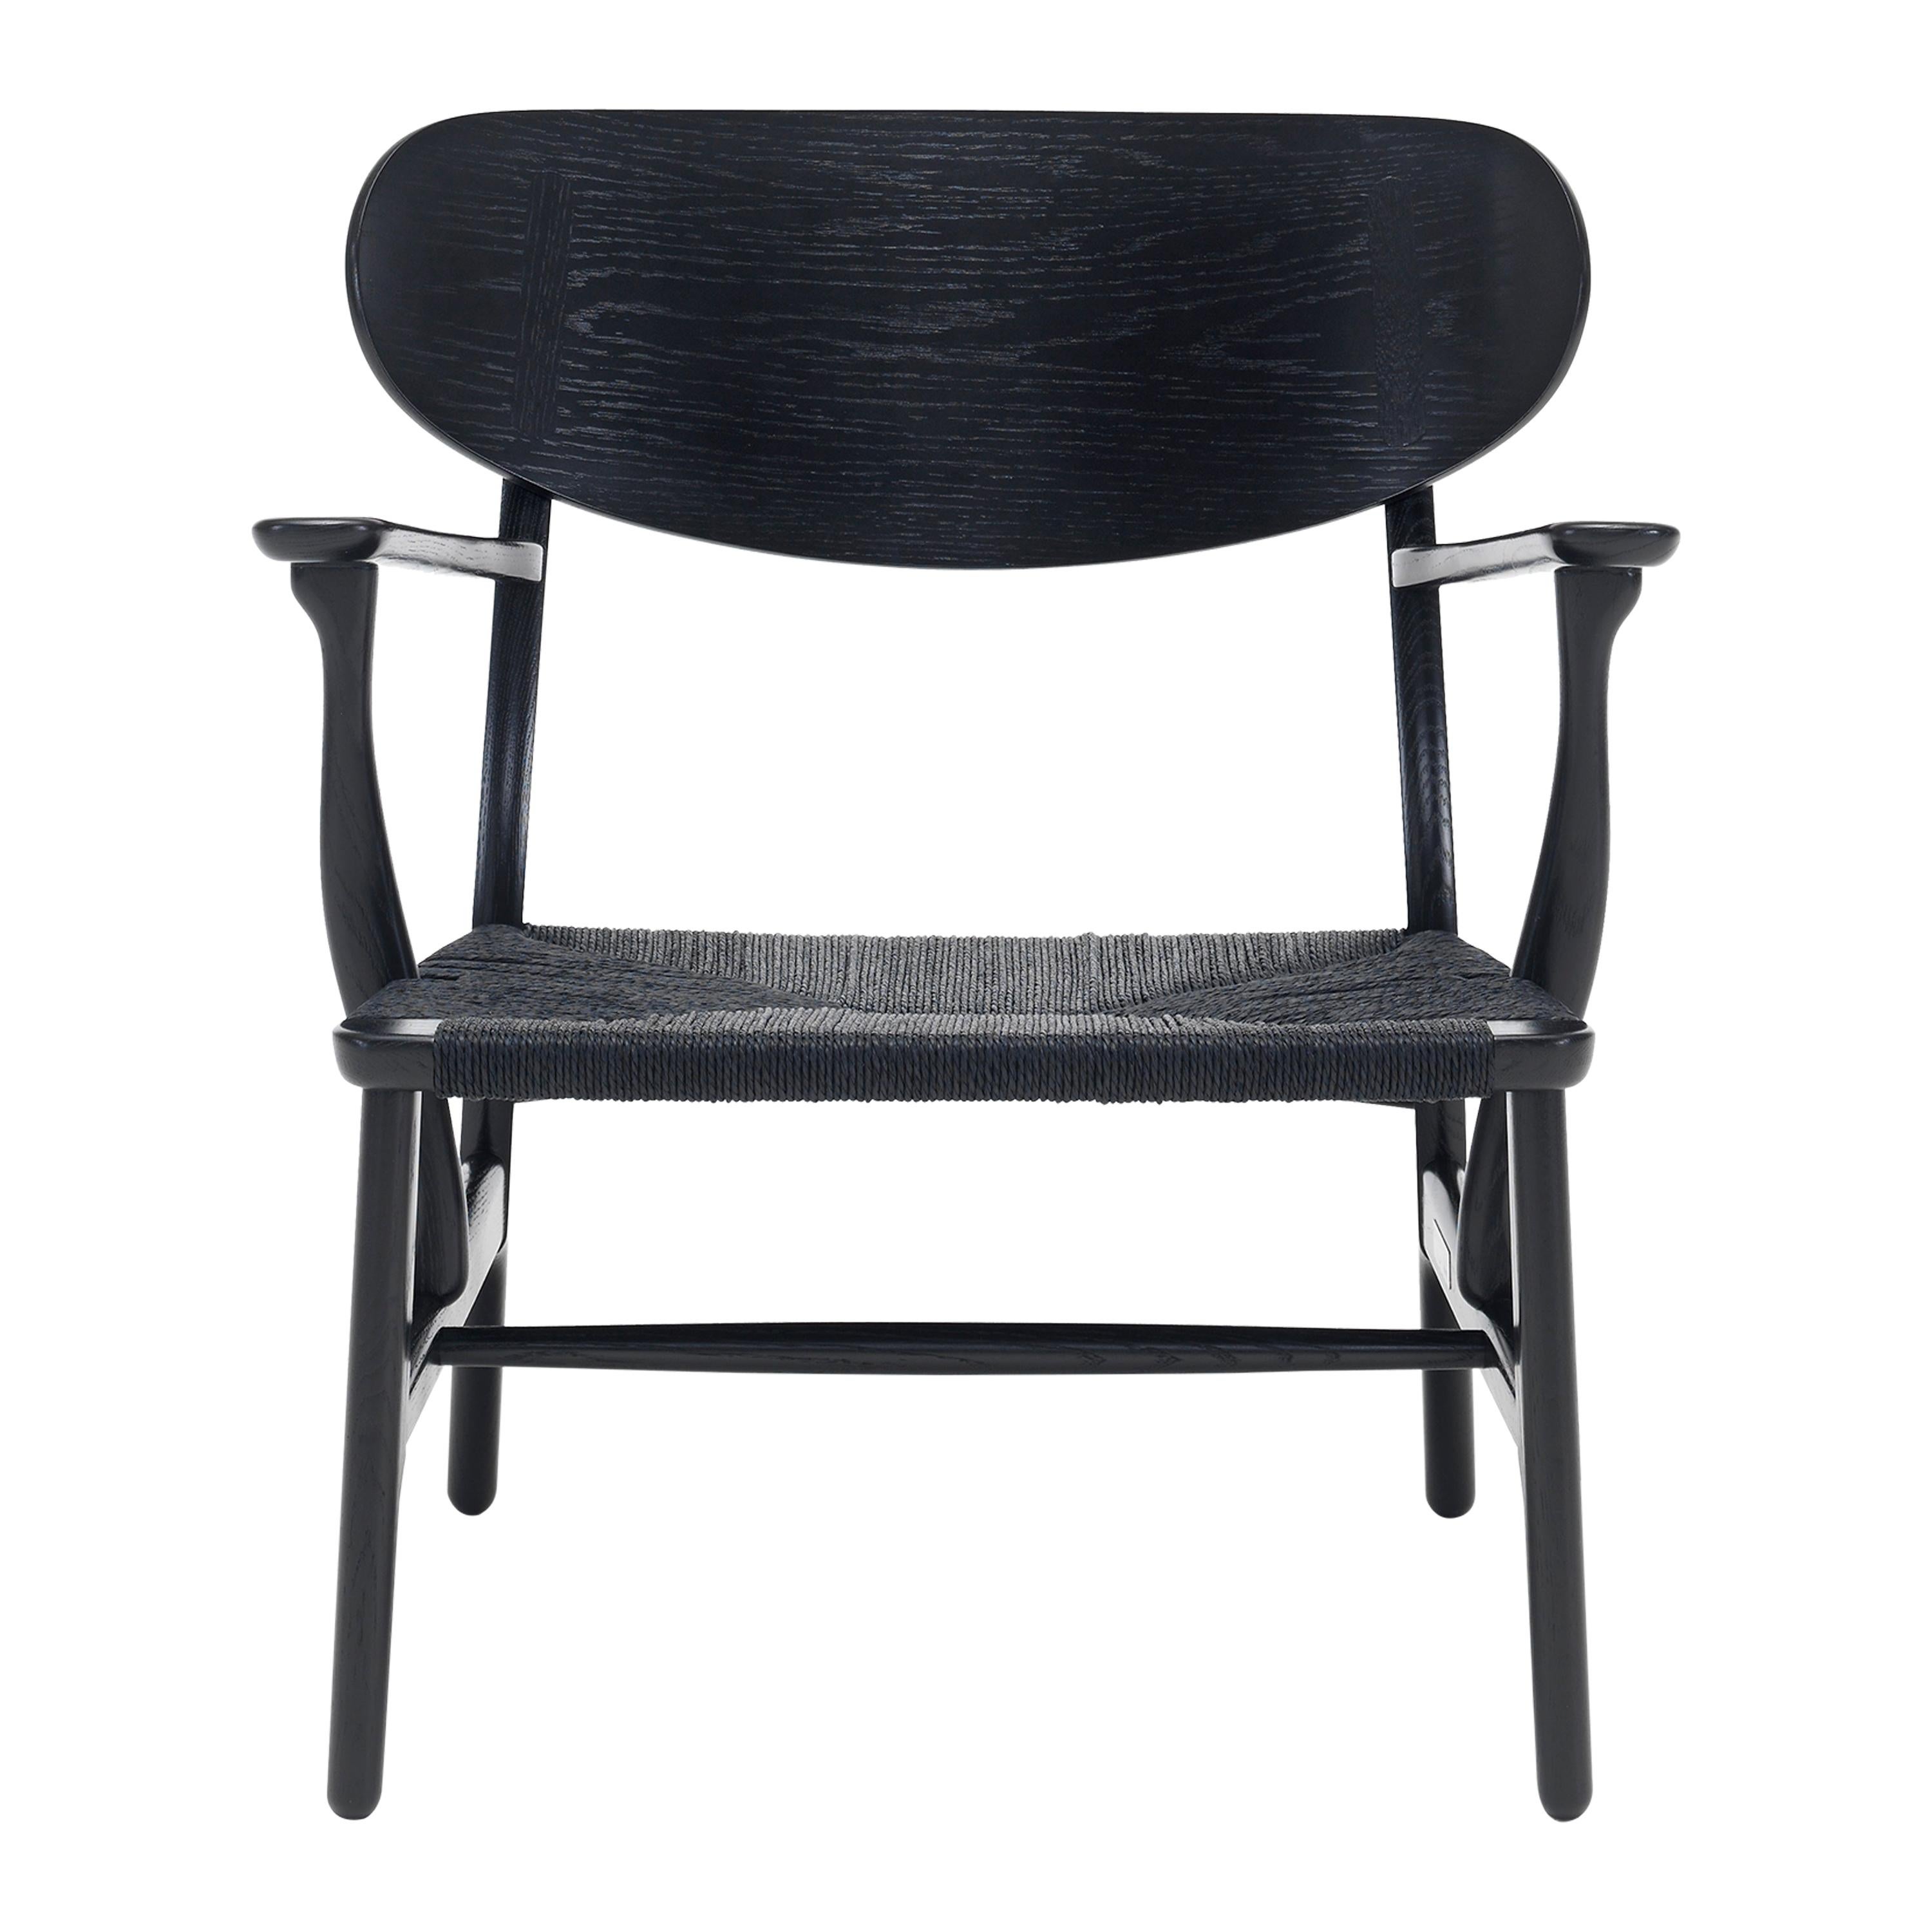 Black (Oak Painted blacks9000-N) CH22 Lounge Chair in Wood with Black Papercord Seat by Hans J. Wegner